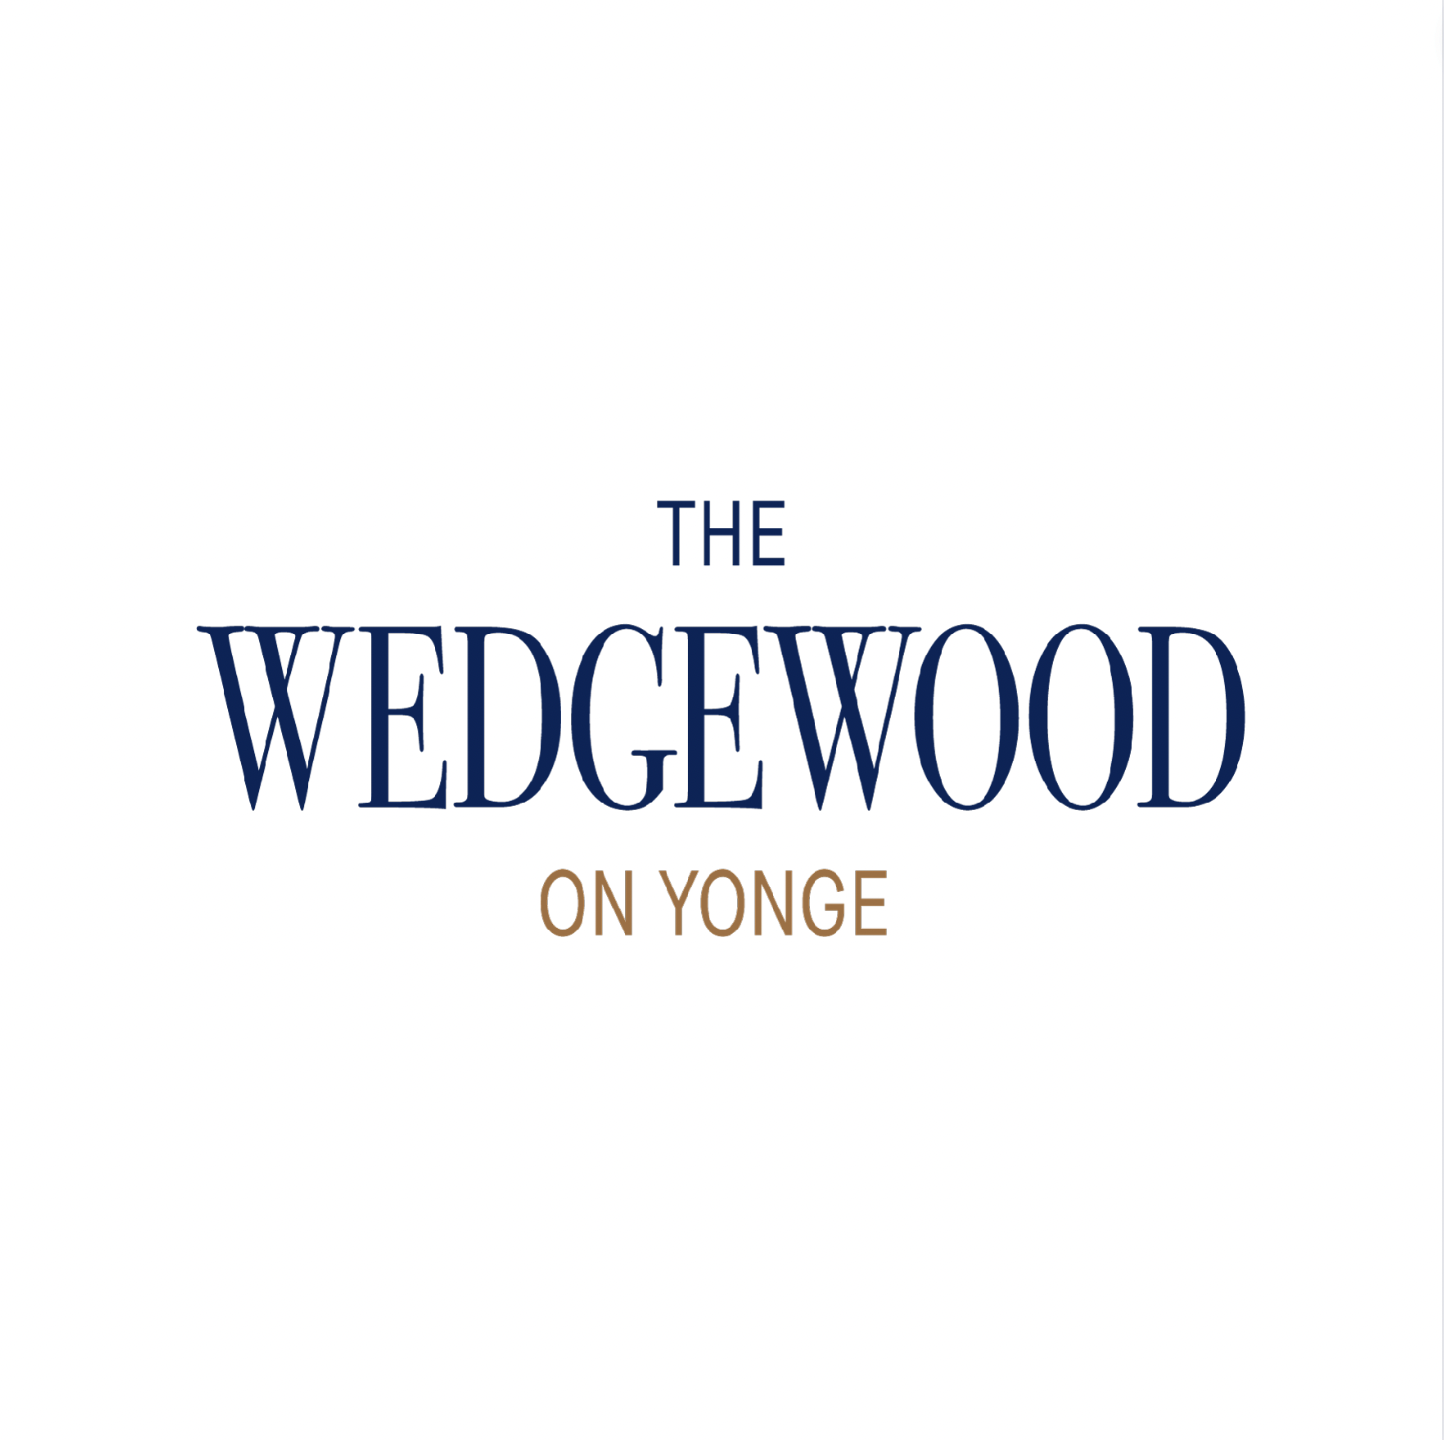 The Wedgewood on Yonge